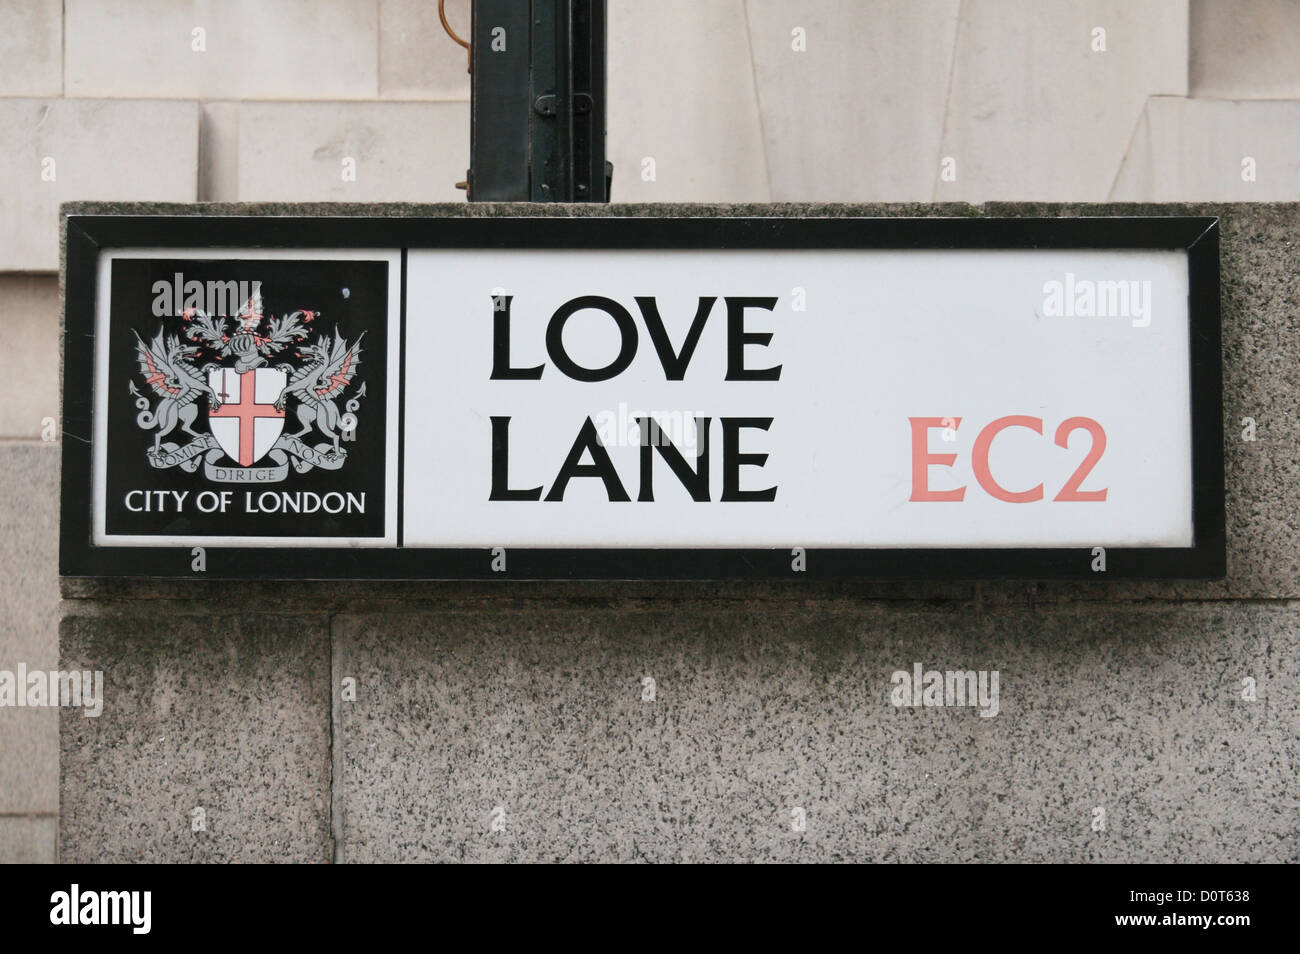 Verkehrszeichen für Love Lane, EC2, City of London, UK. Stockfoto